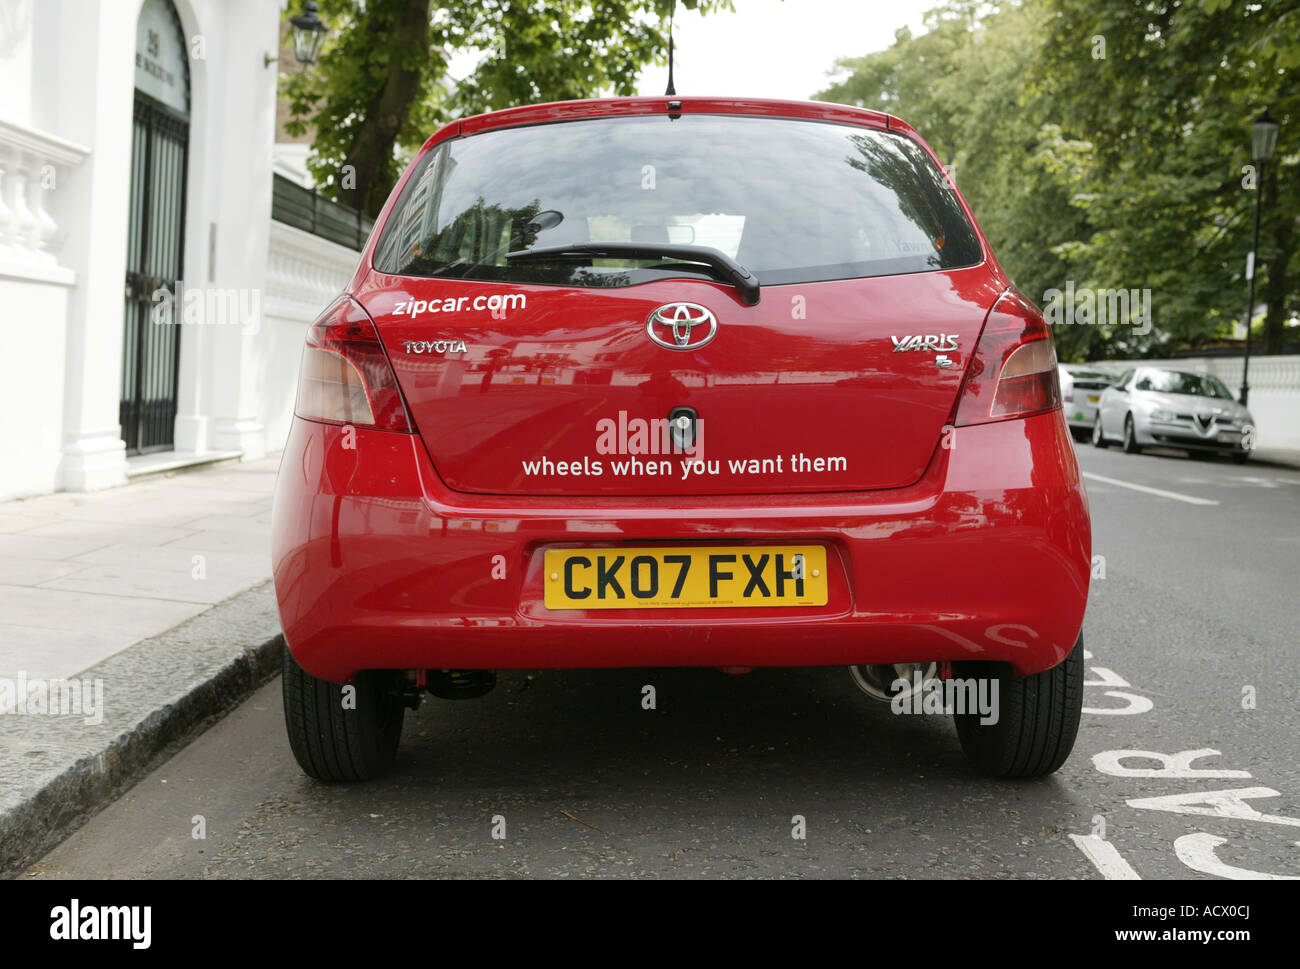 Club rouge une voiture garée dans une rue de Londres Banque D'Images